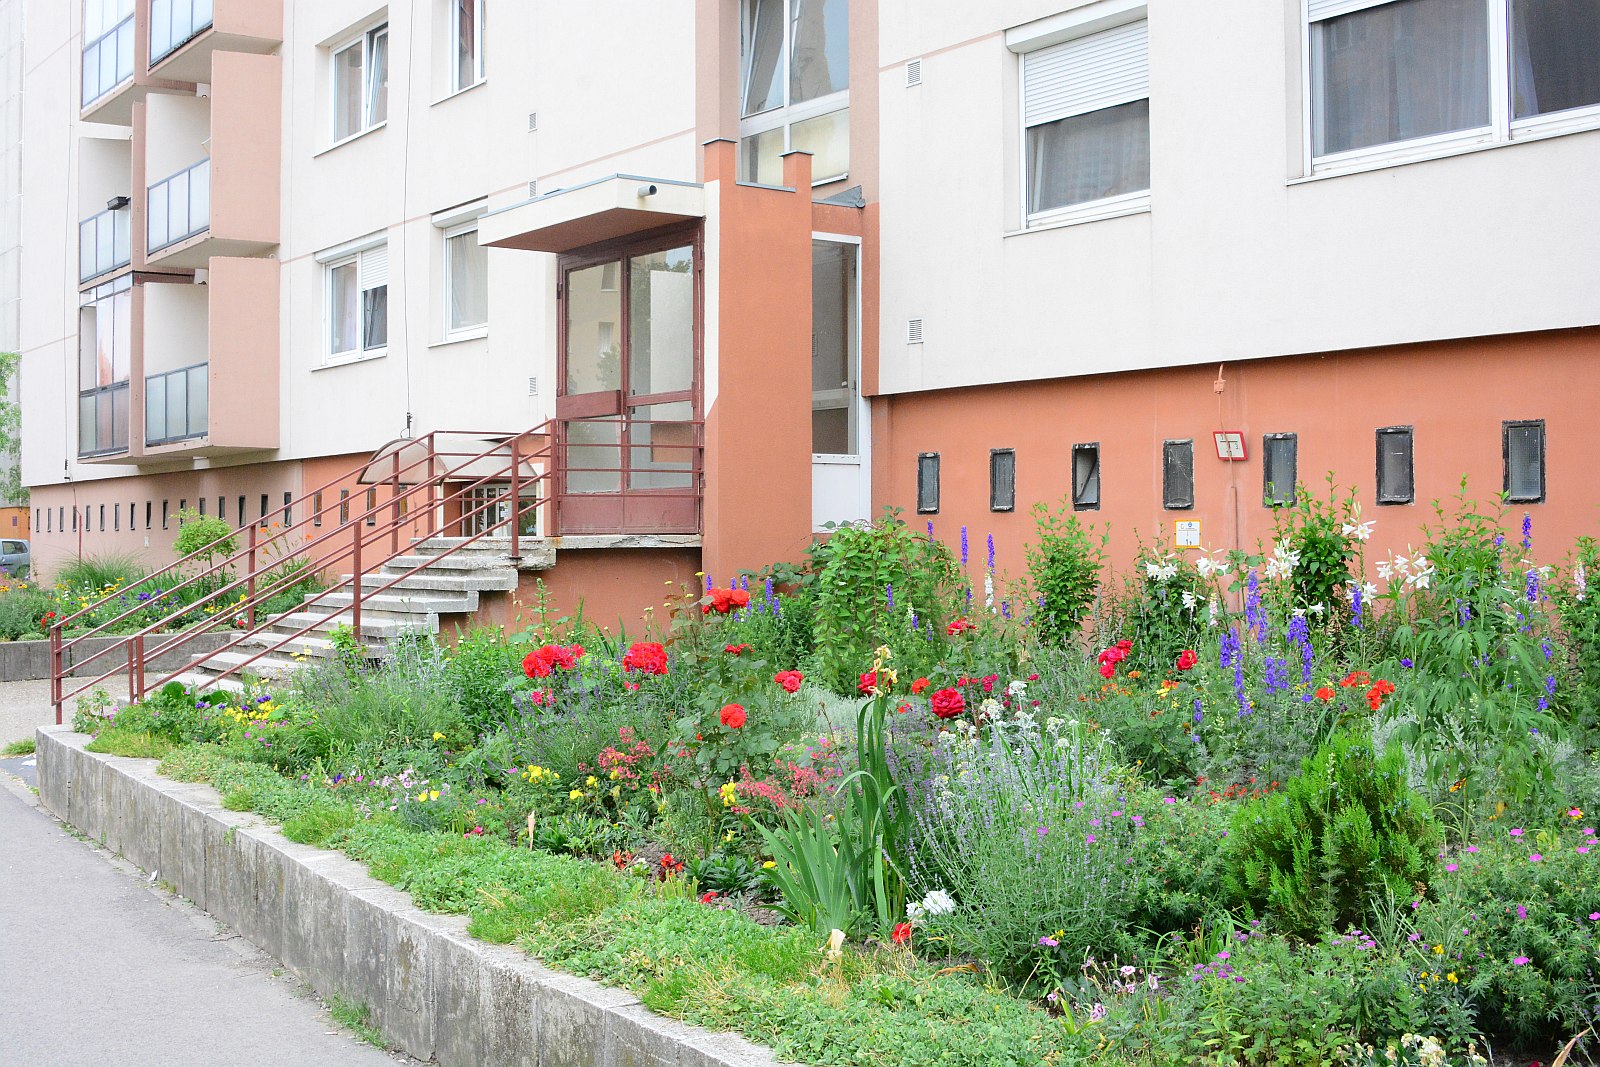 Nézze meg milyen kiskerteket alakítottak ki a fehérváriak a házak előtt